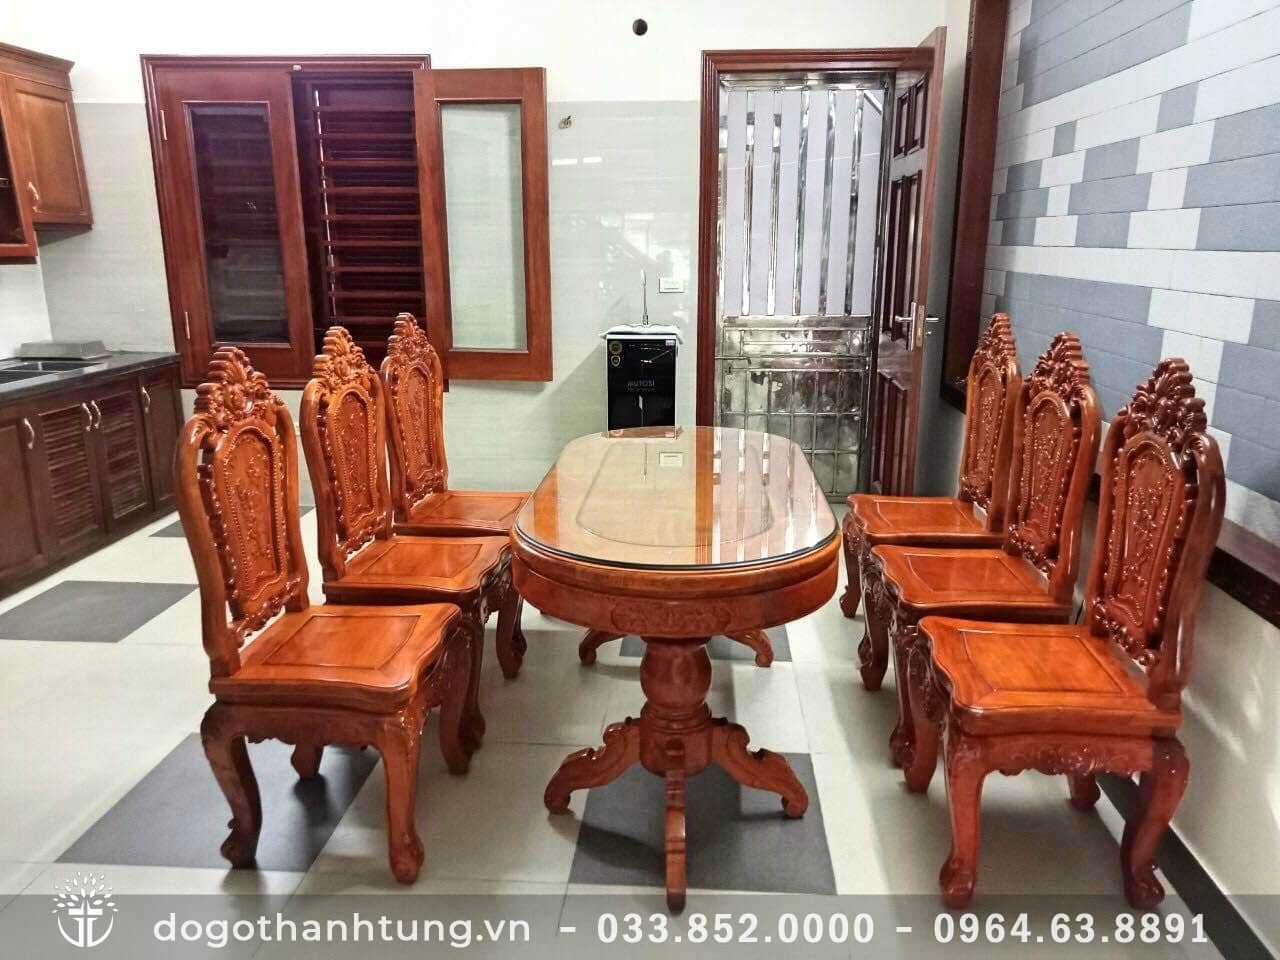 Bộ bàn ăn bầu dục 6 ghế louis hoa hồng gỗ gõ đỏ (chú Hải, Bắc Ninh ...